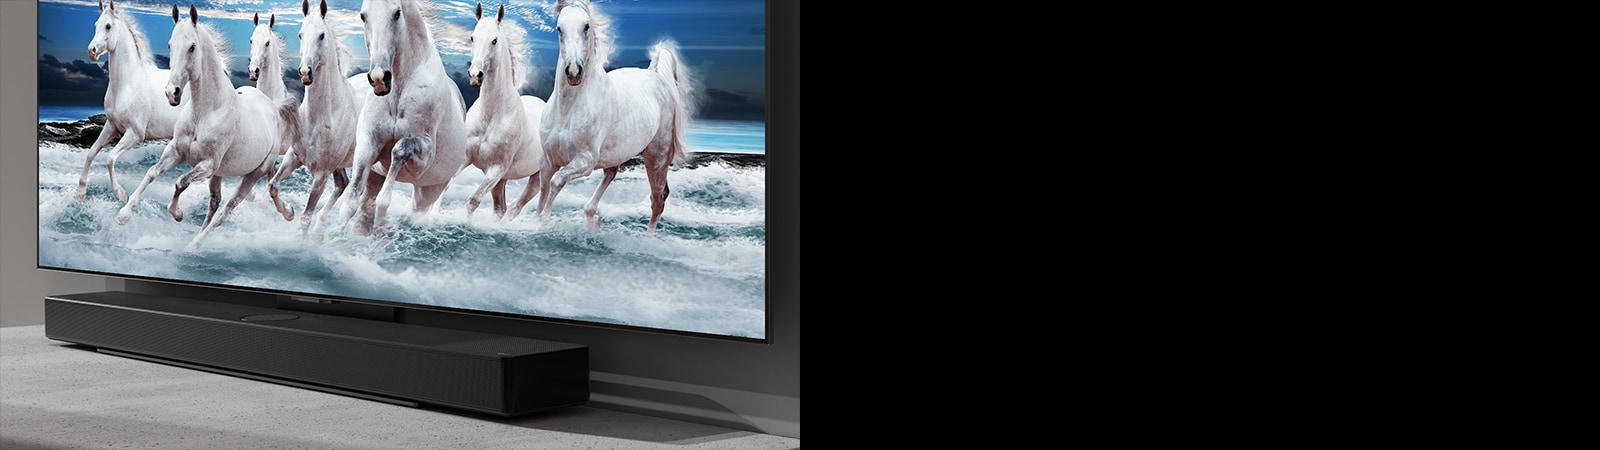 De soundbar en de tv zijn op de witte tafel geplaatst en op de tv zijn 7 witte paarden te zien.